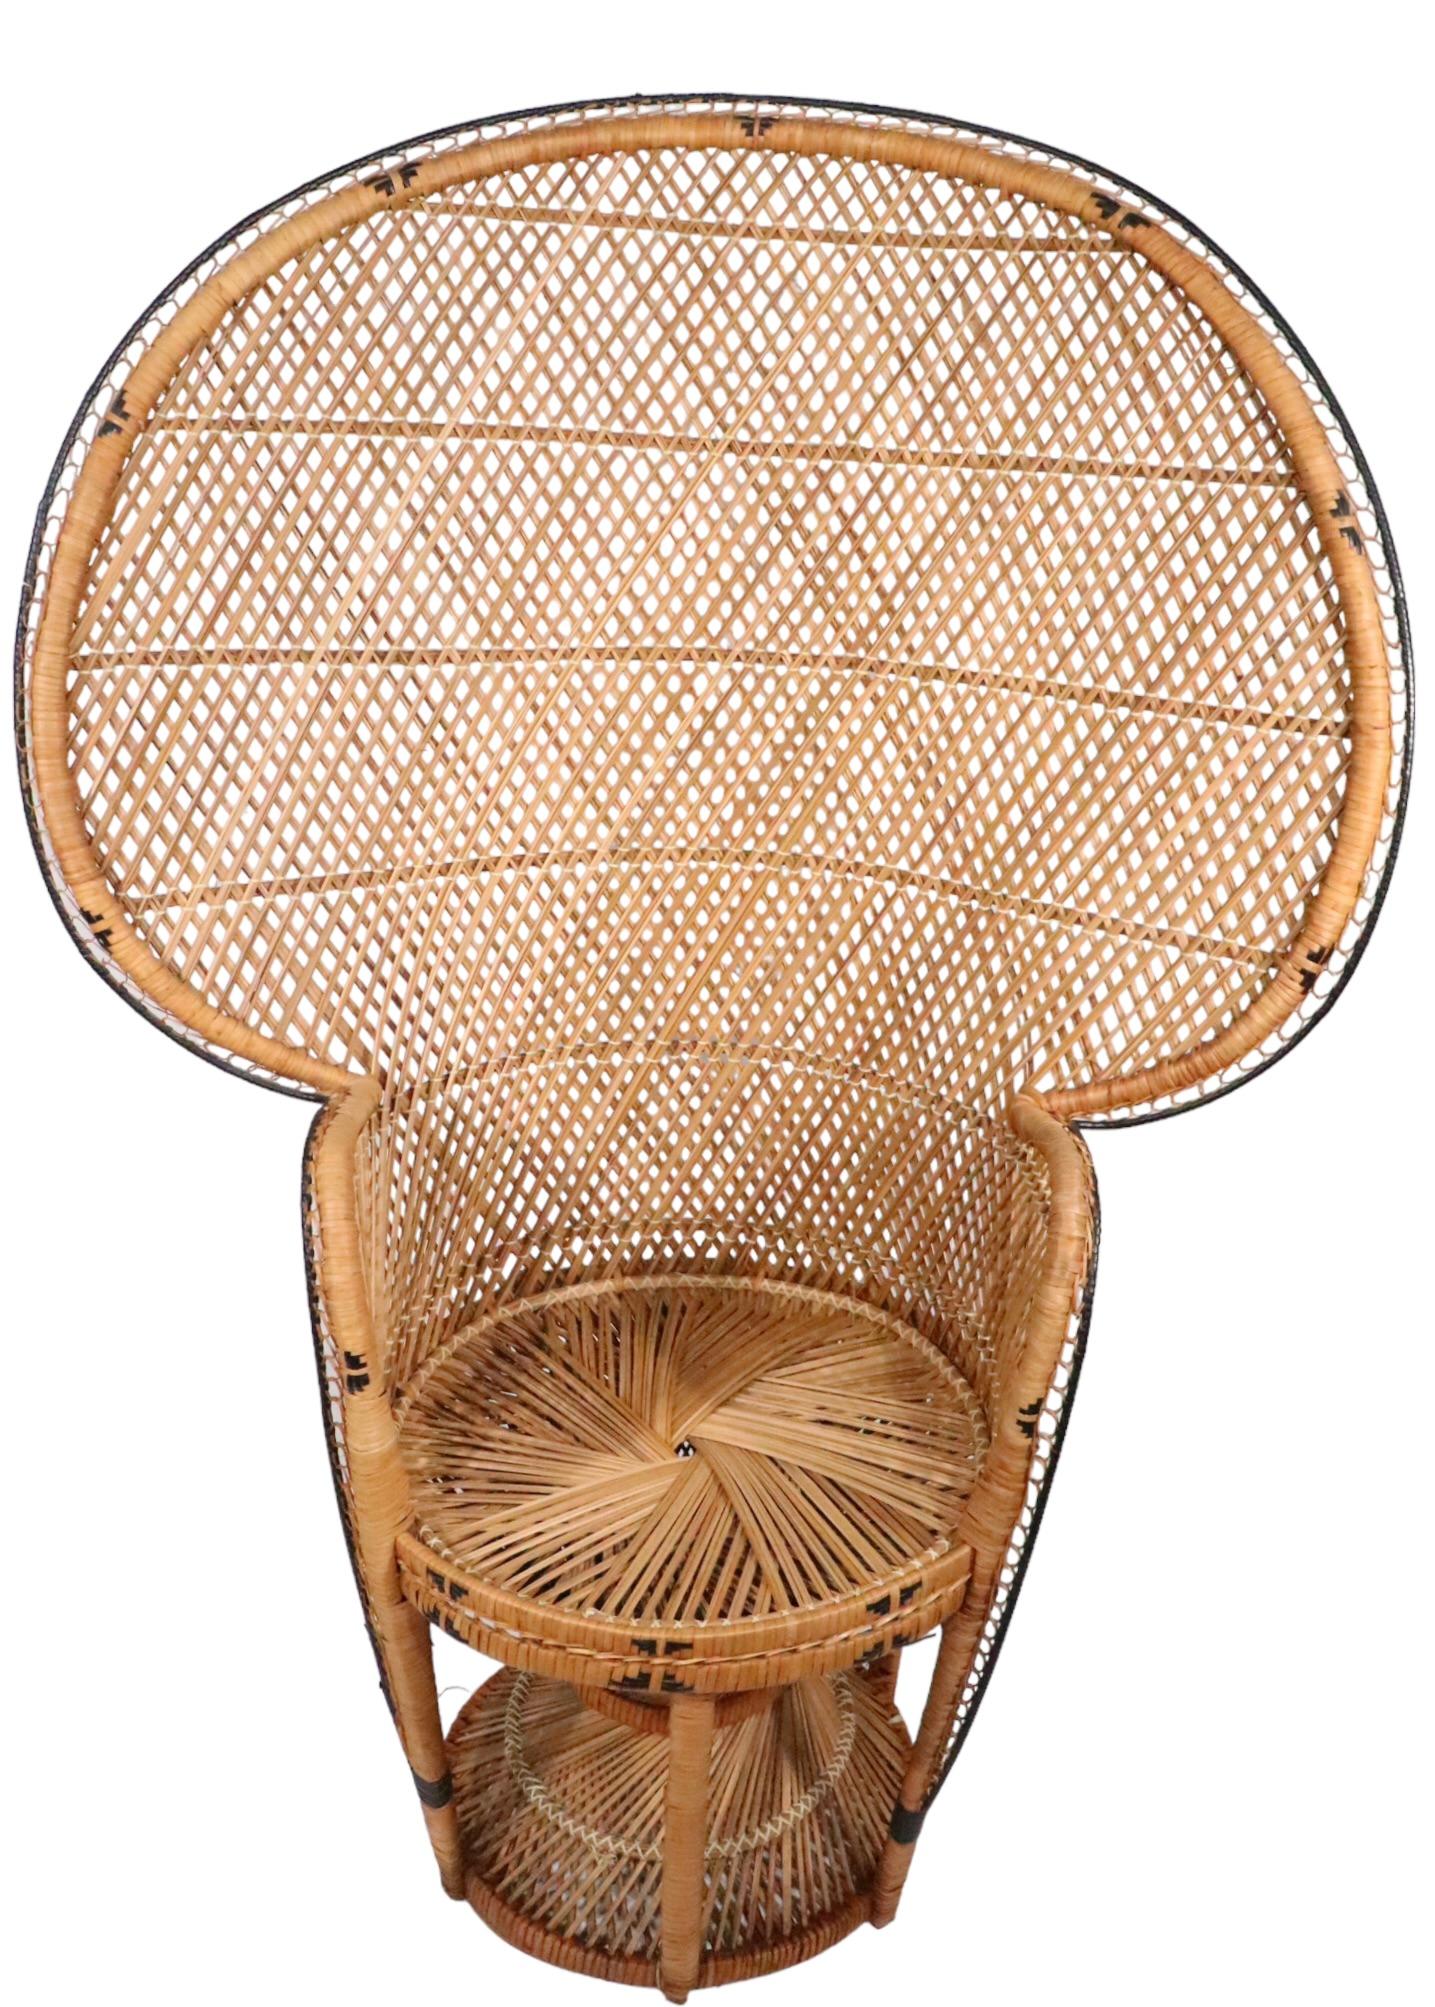 Emmanuelle  Peacock Bamboo Wicker Fan Chair c. 1960/1970's For Sale 3